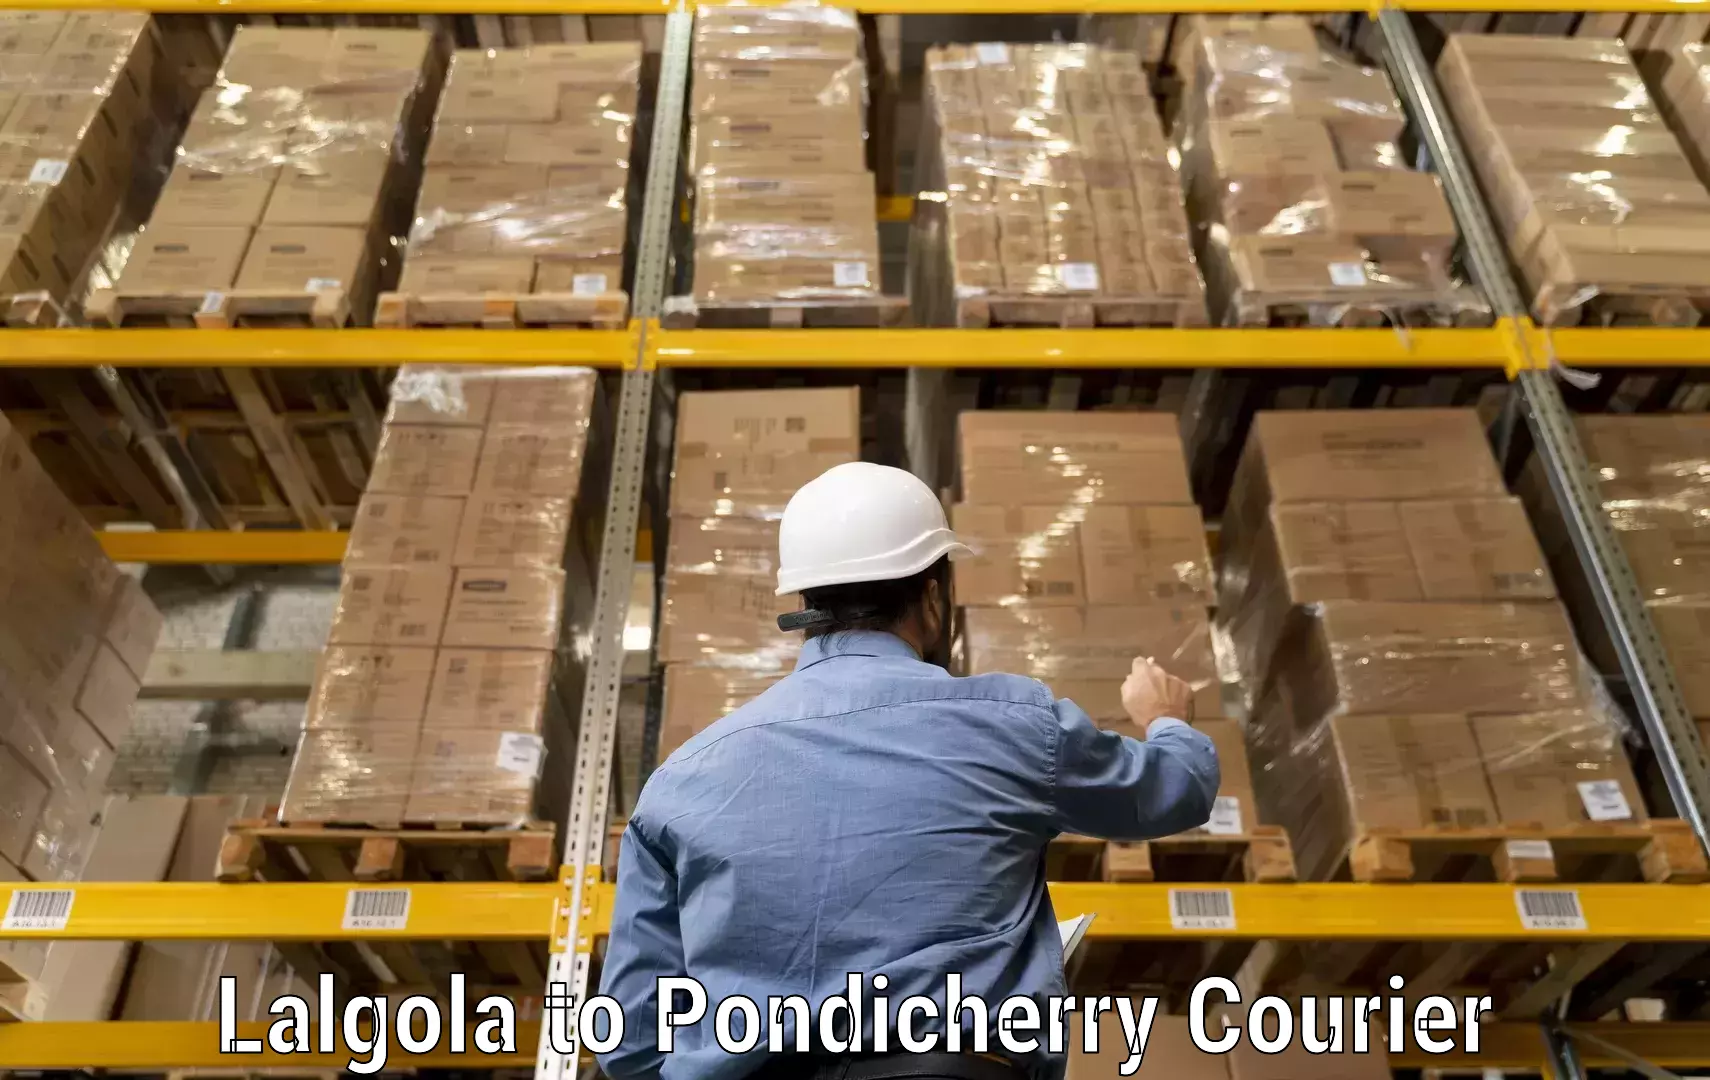 Courier service comparison in Lalgola to Pondicherry